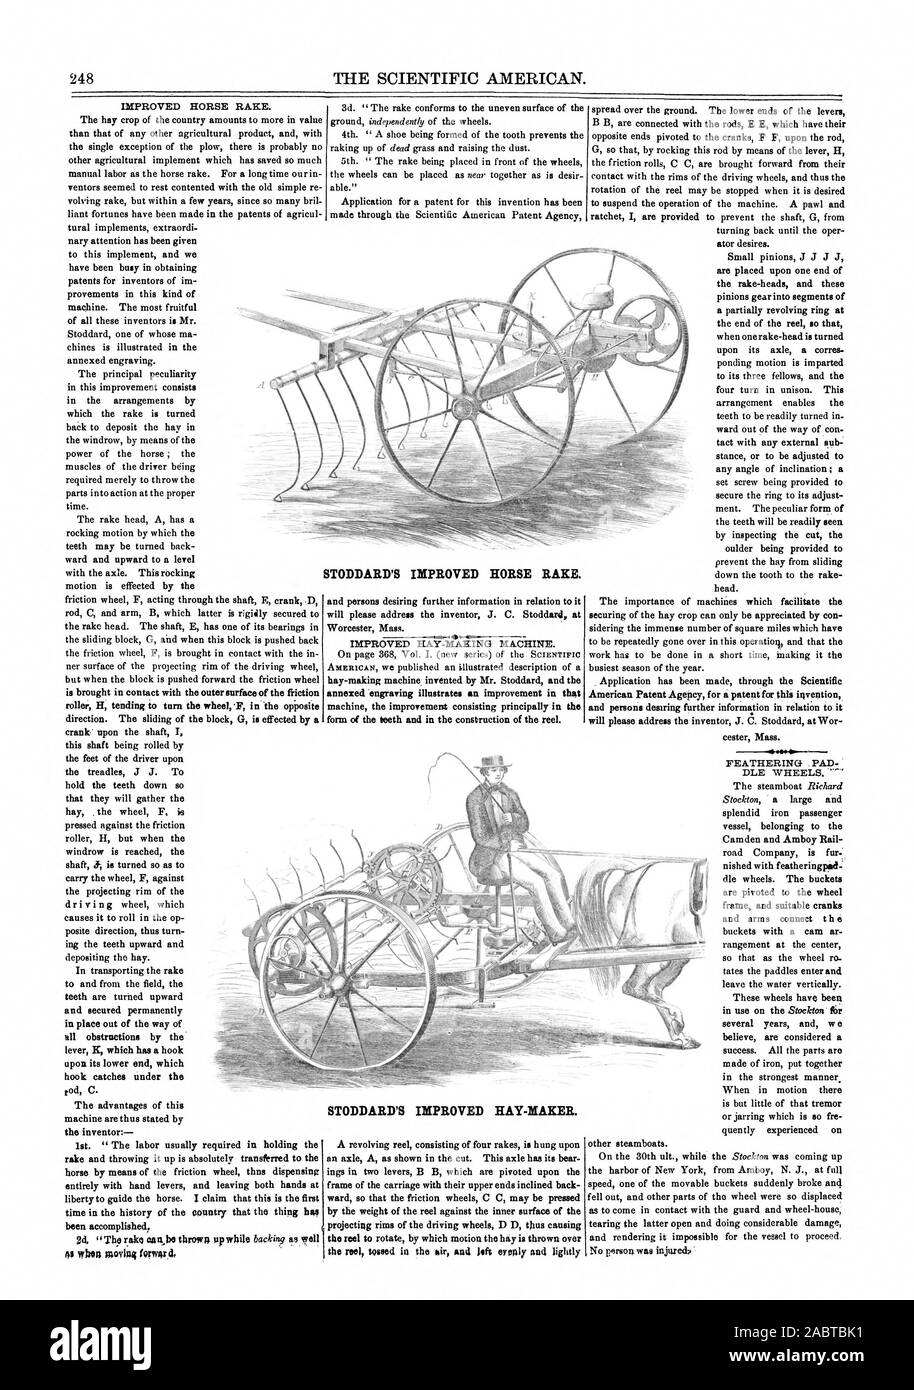 L'AMÉLIORATION DE STODDARD HORSE RAKE., Scientific American, 1860-04-14 Banque D'Images